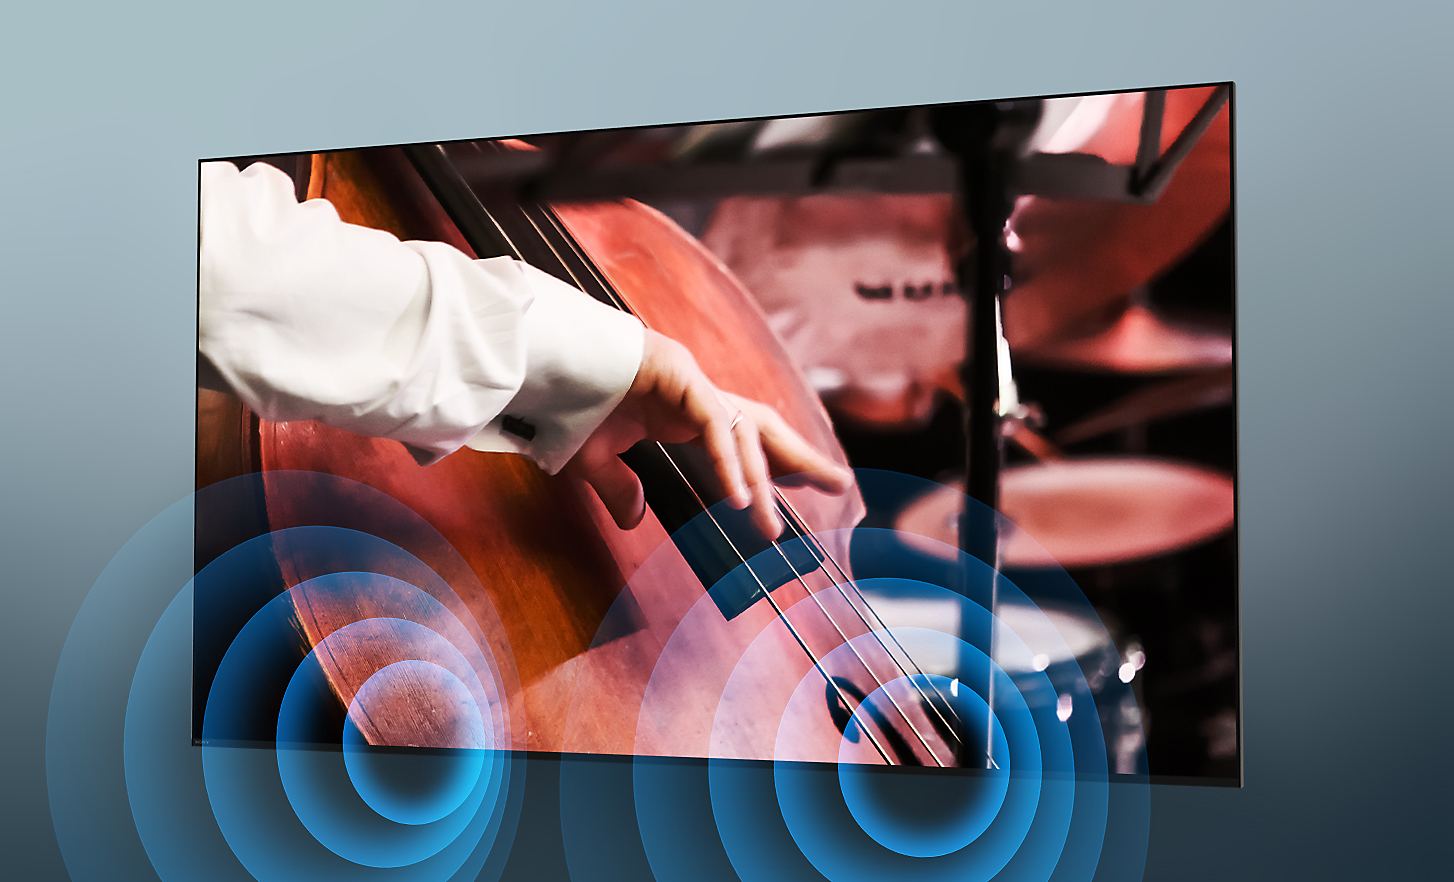 Televizor BRAVIA s posnetkom zaslona, na katerem glasbenik v orkestru igra kontrabas